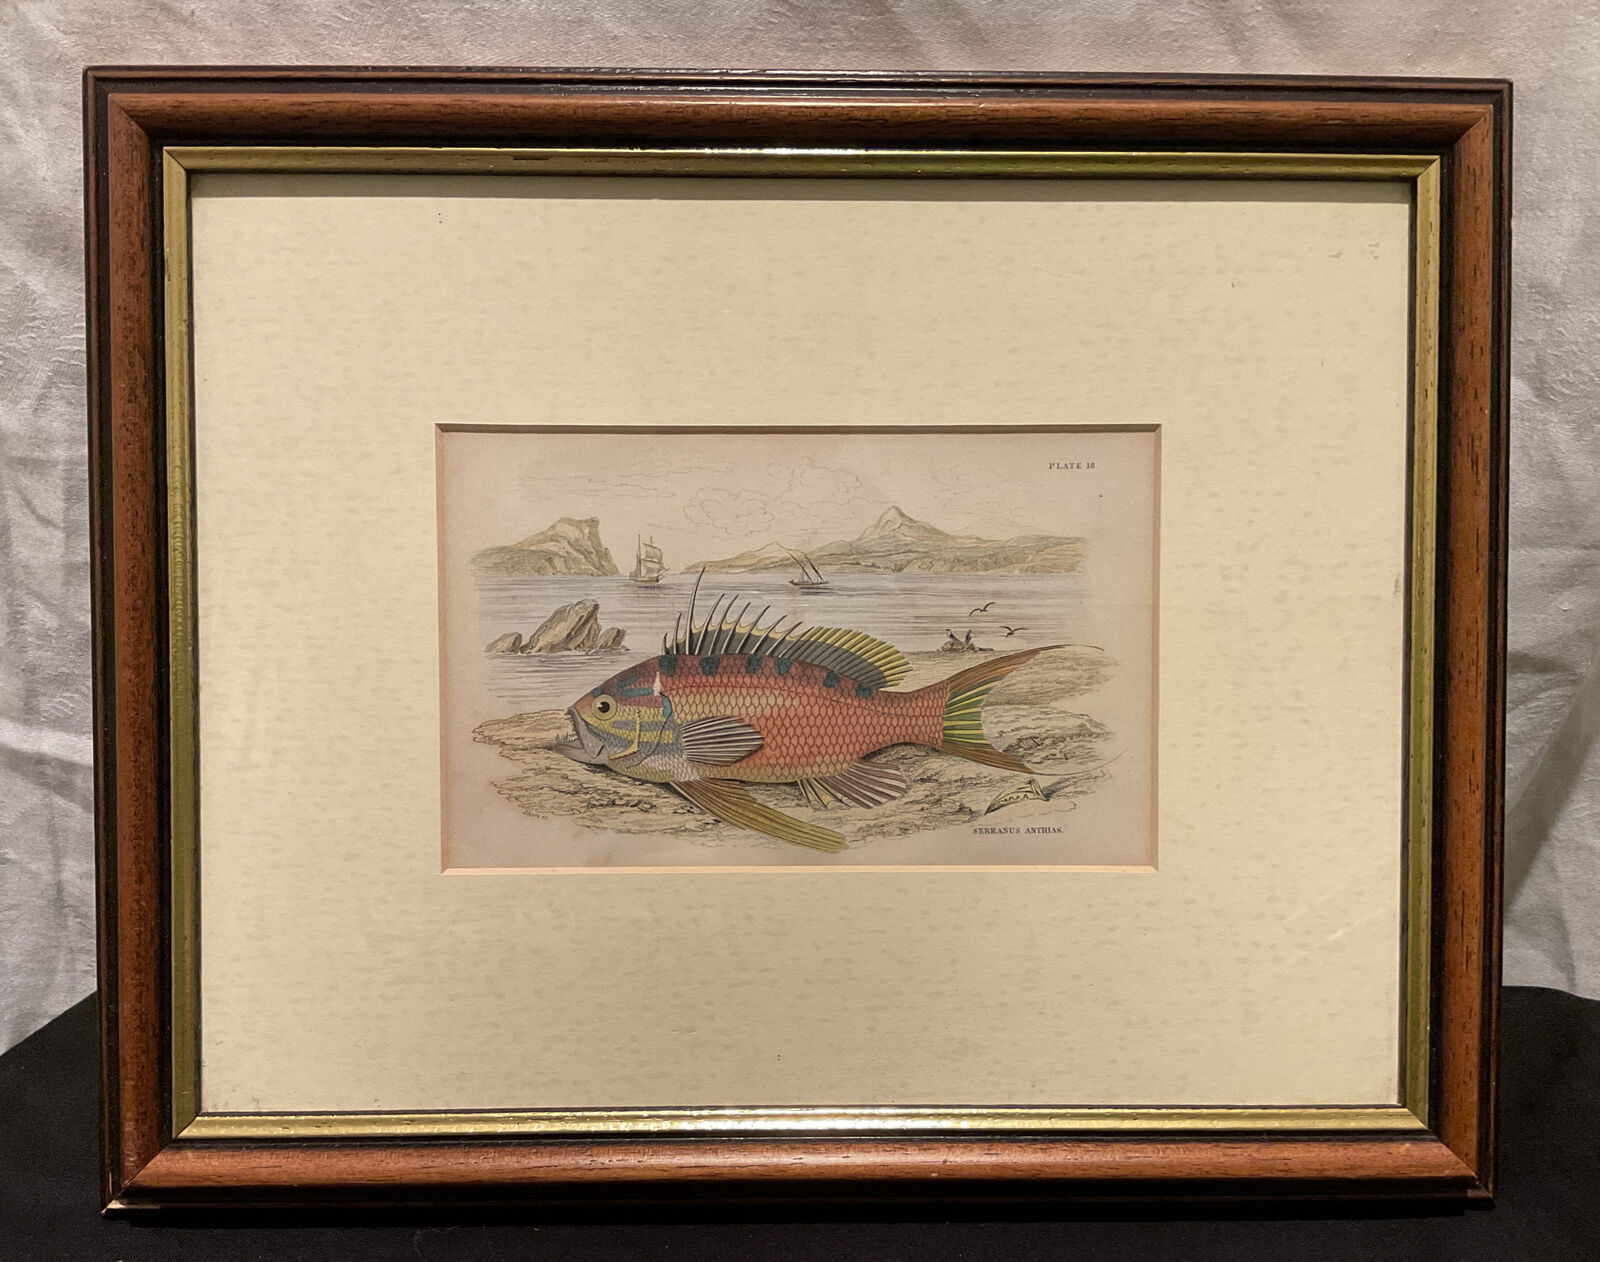 ANTIQUE 19th CENTURY ENGRAVING 1840 HAND COLOURED FISH SERRANUS ANTHIAS LIZARS